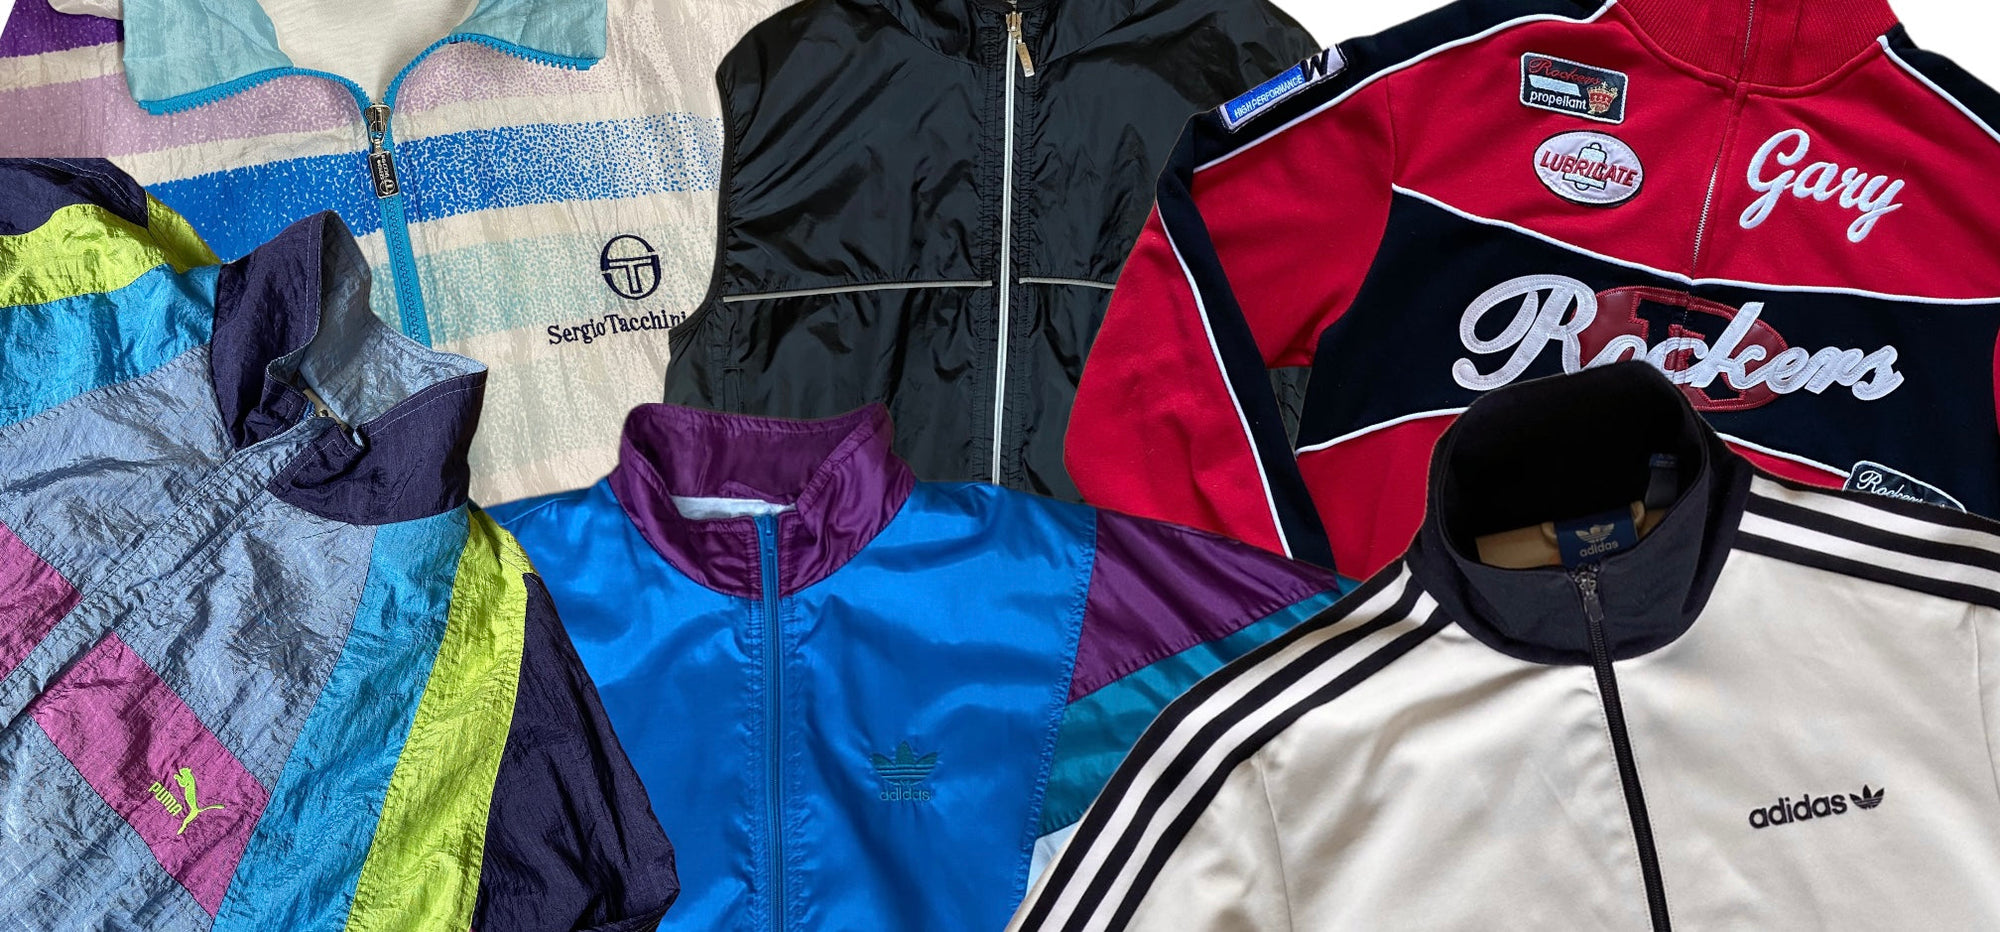 Zu sehen ist eine Auswahl an 90/80s Track Jackets, wie zum Beispiel eine Silberne von Adidas oder eine Multicolored von Puma.